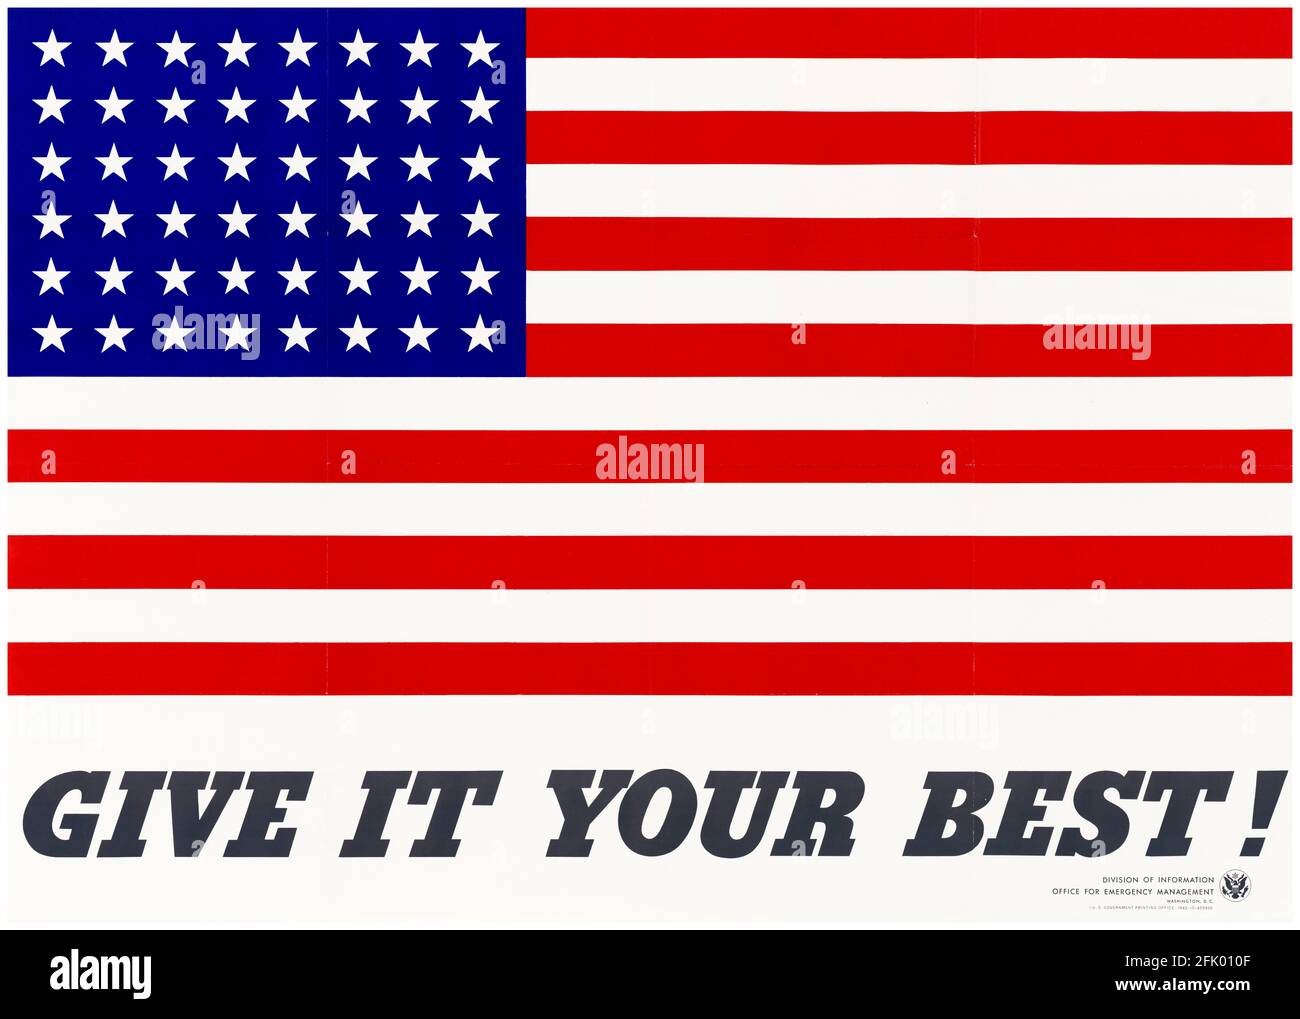 American, Cartel Motivacional WW2, ¡Dale lo mejor!, (bandera de estrellas y rayas), 1942-1945 Foto de stock